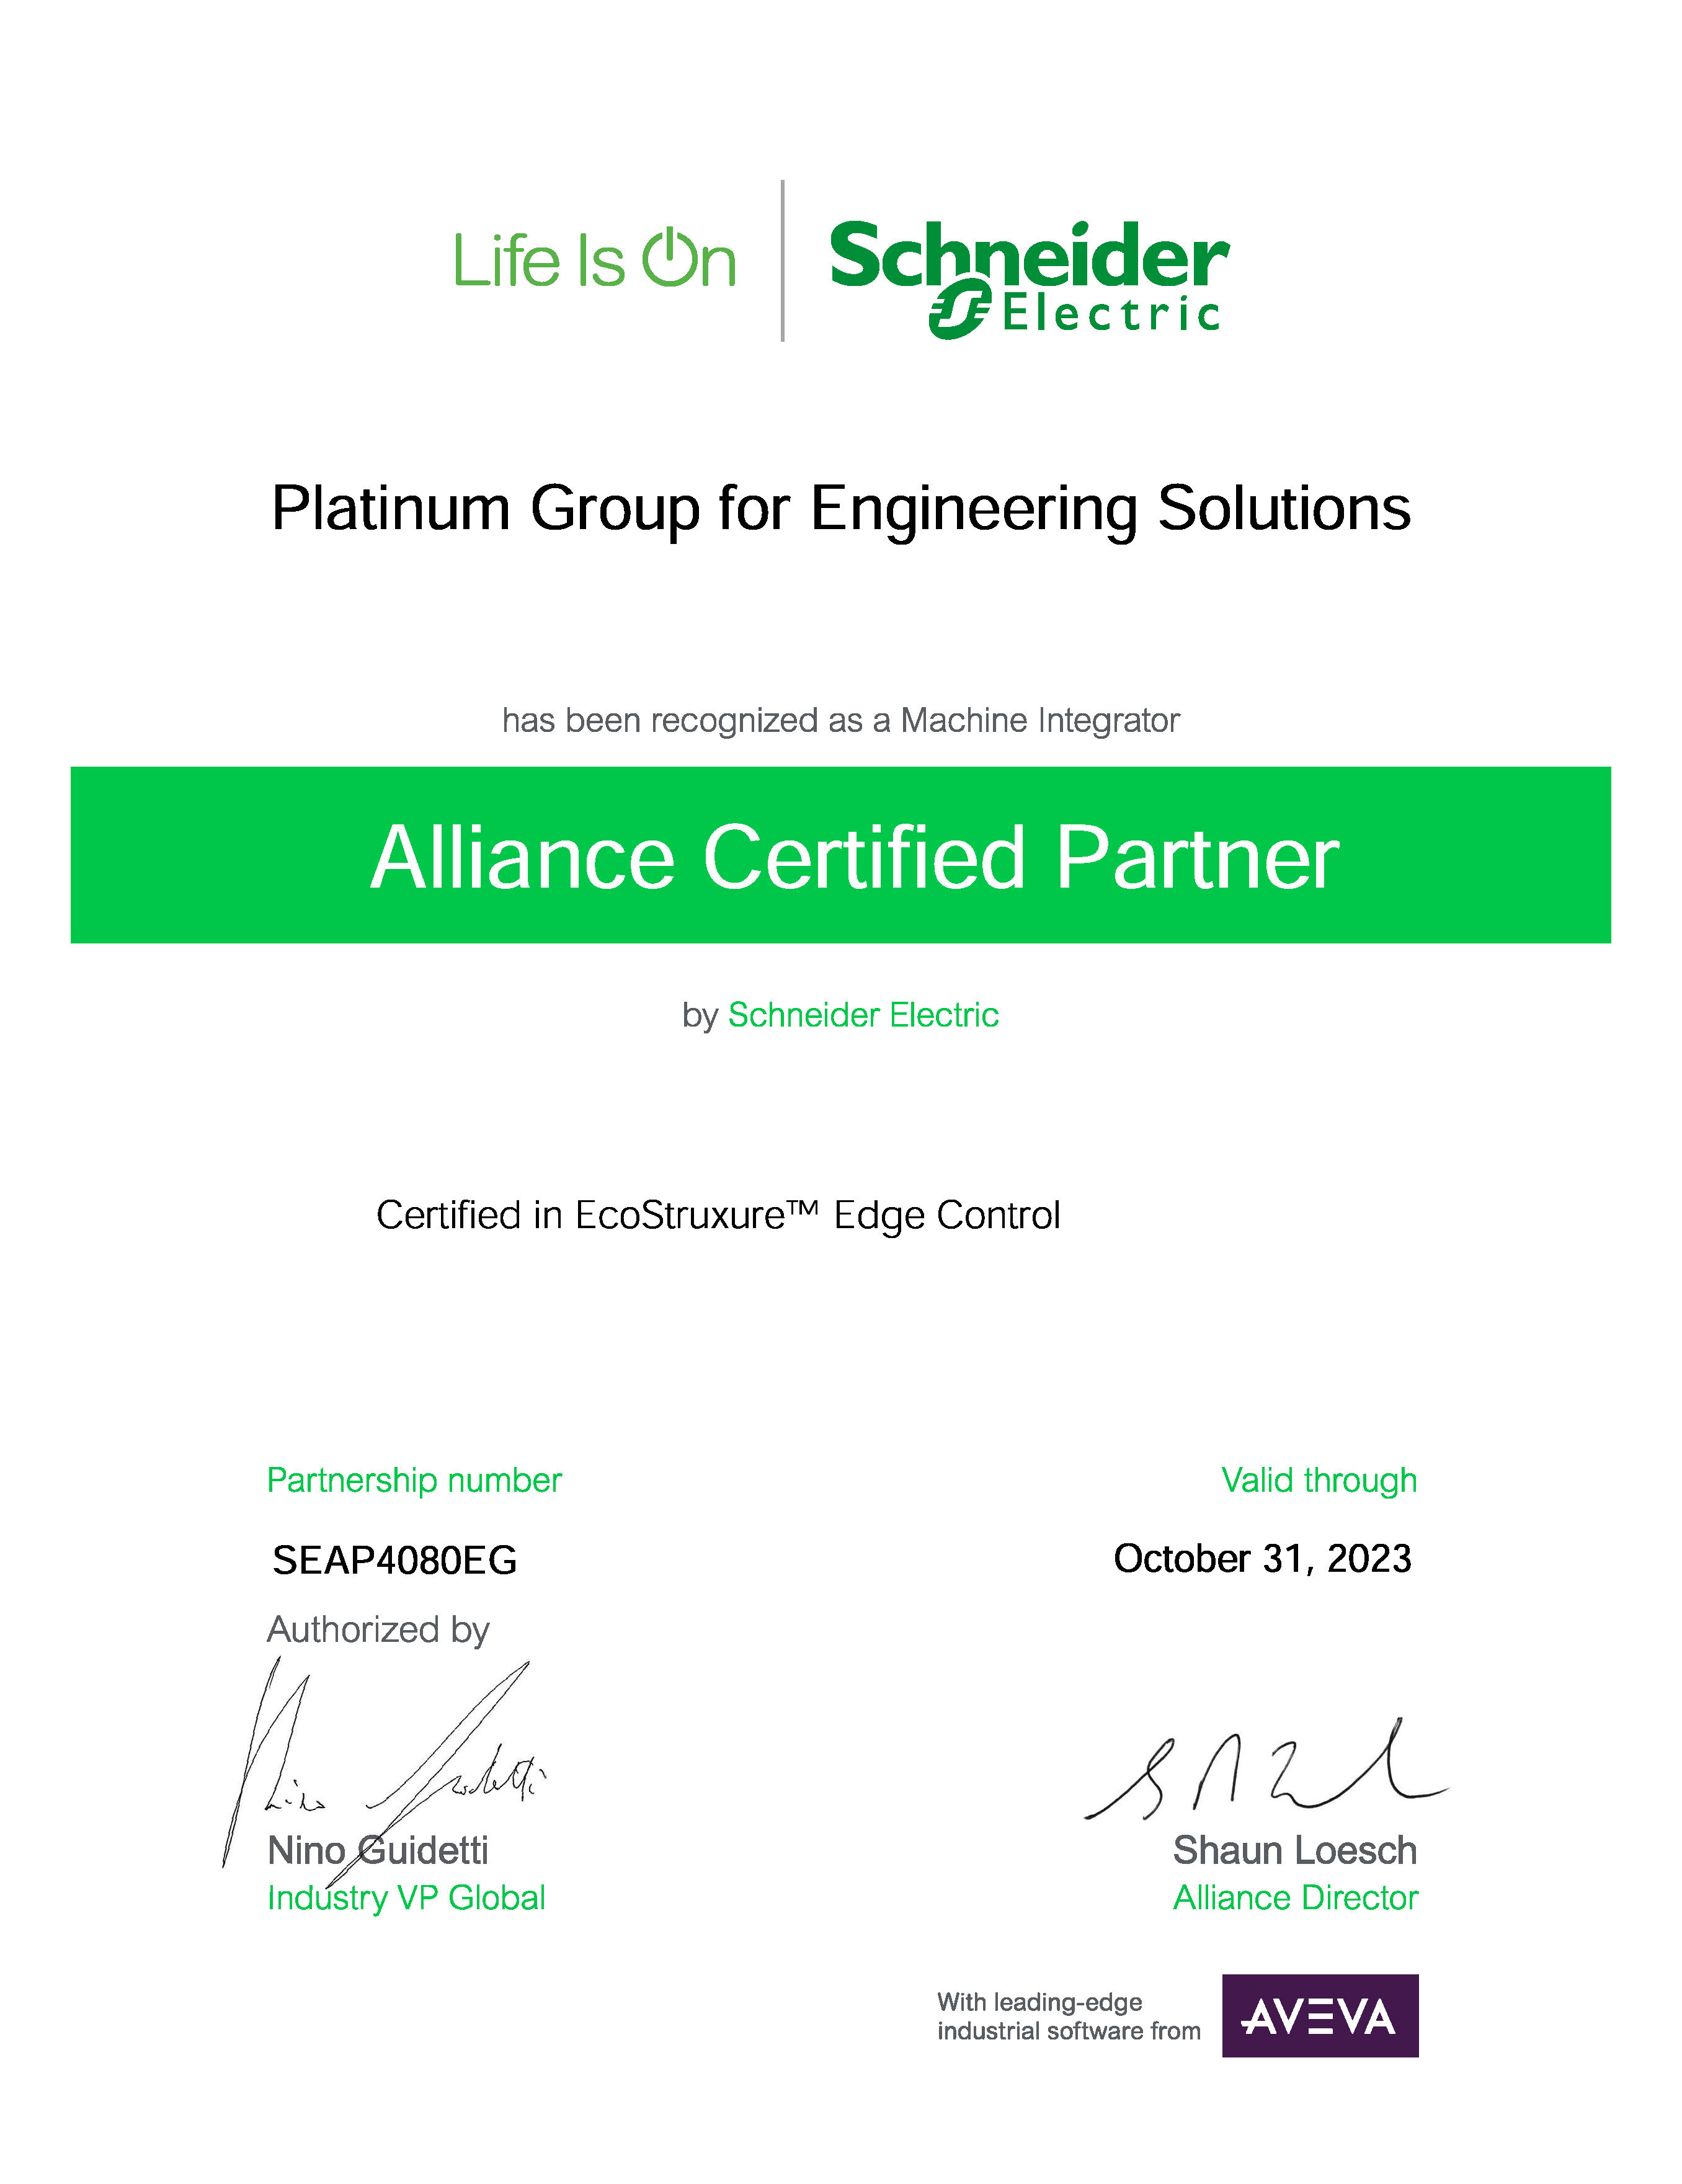 Alliance certified partner of Schneider and machine integrator.